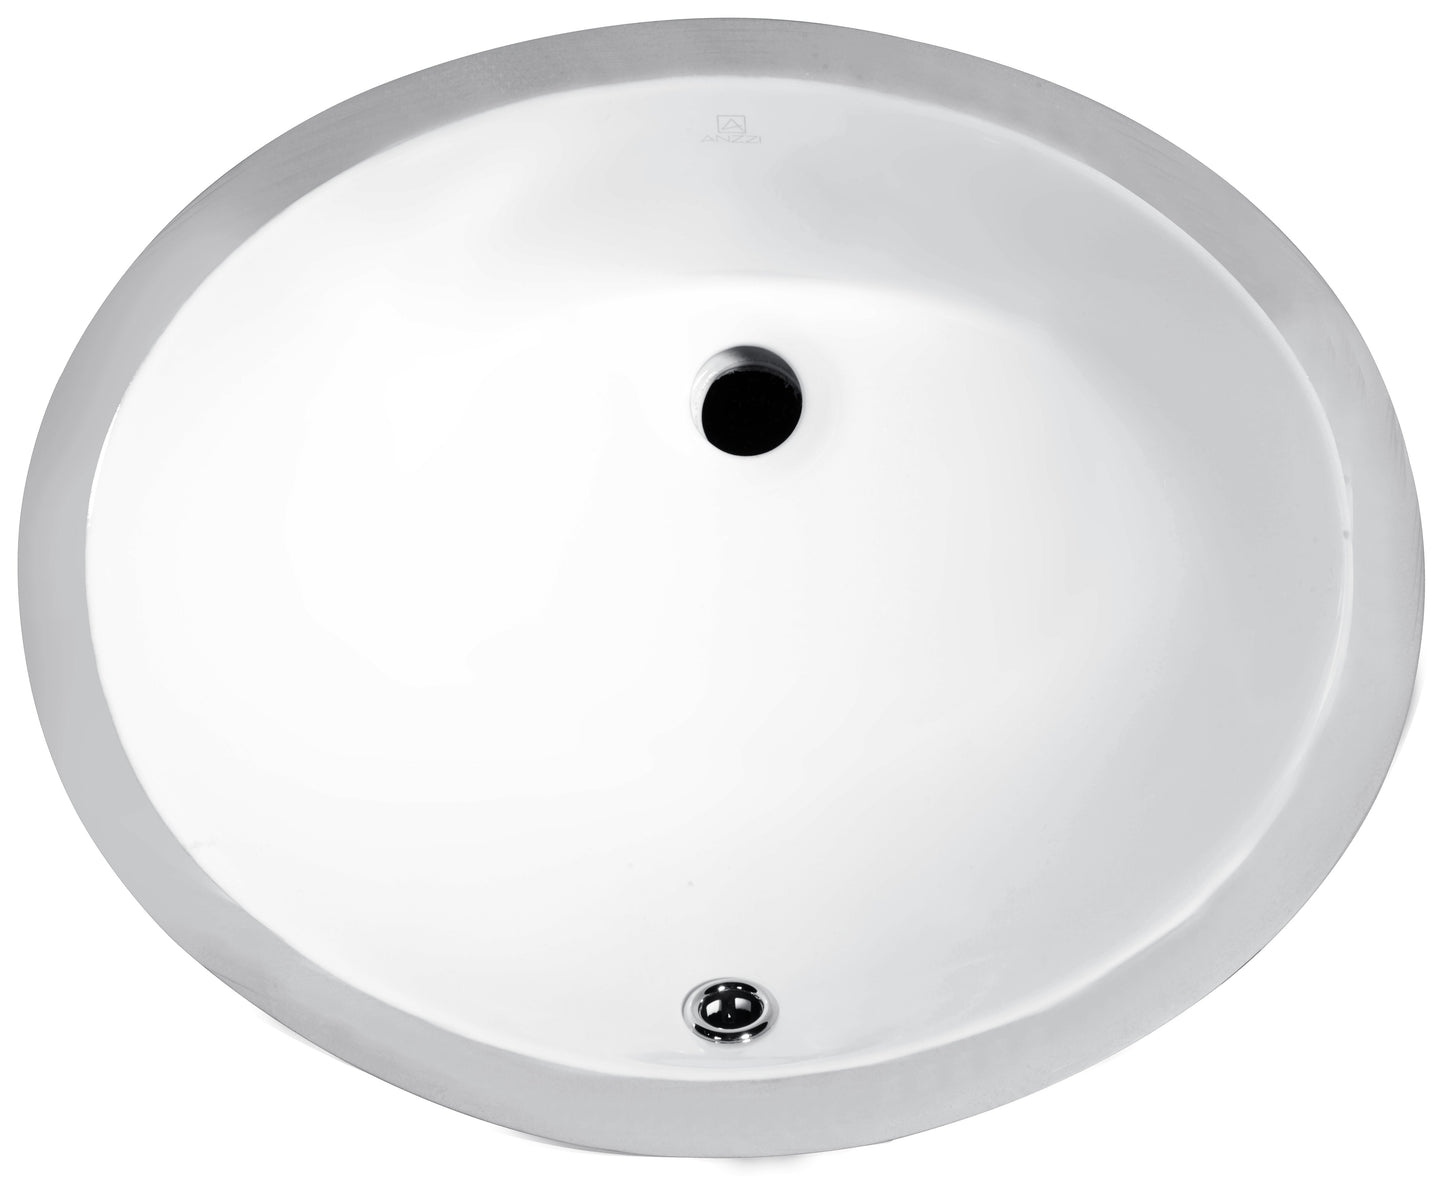 Lanmia Series 8 in. Ceramic Undermount Sink Basin in White - Luxe Bathroom Vanities